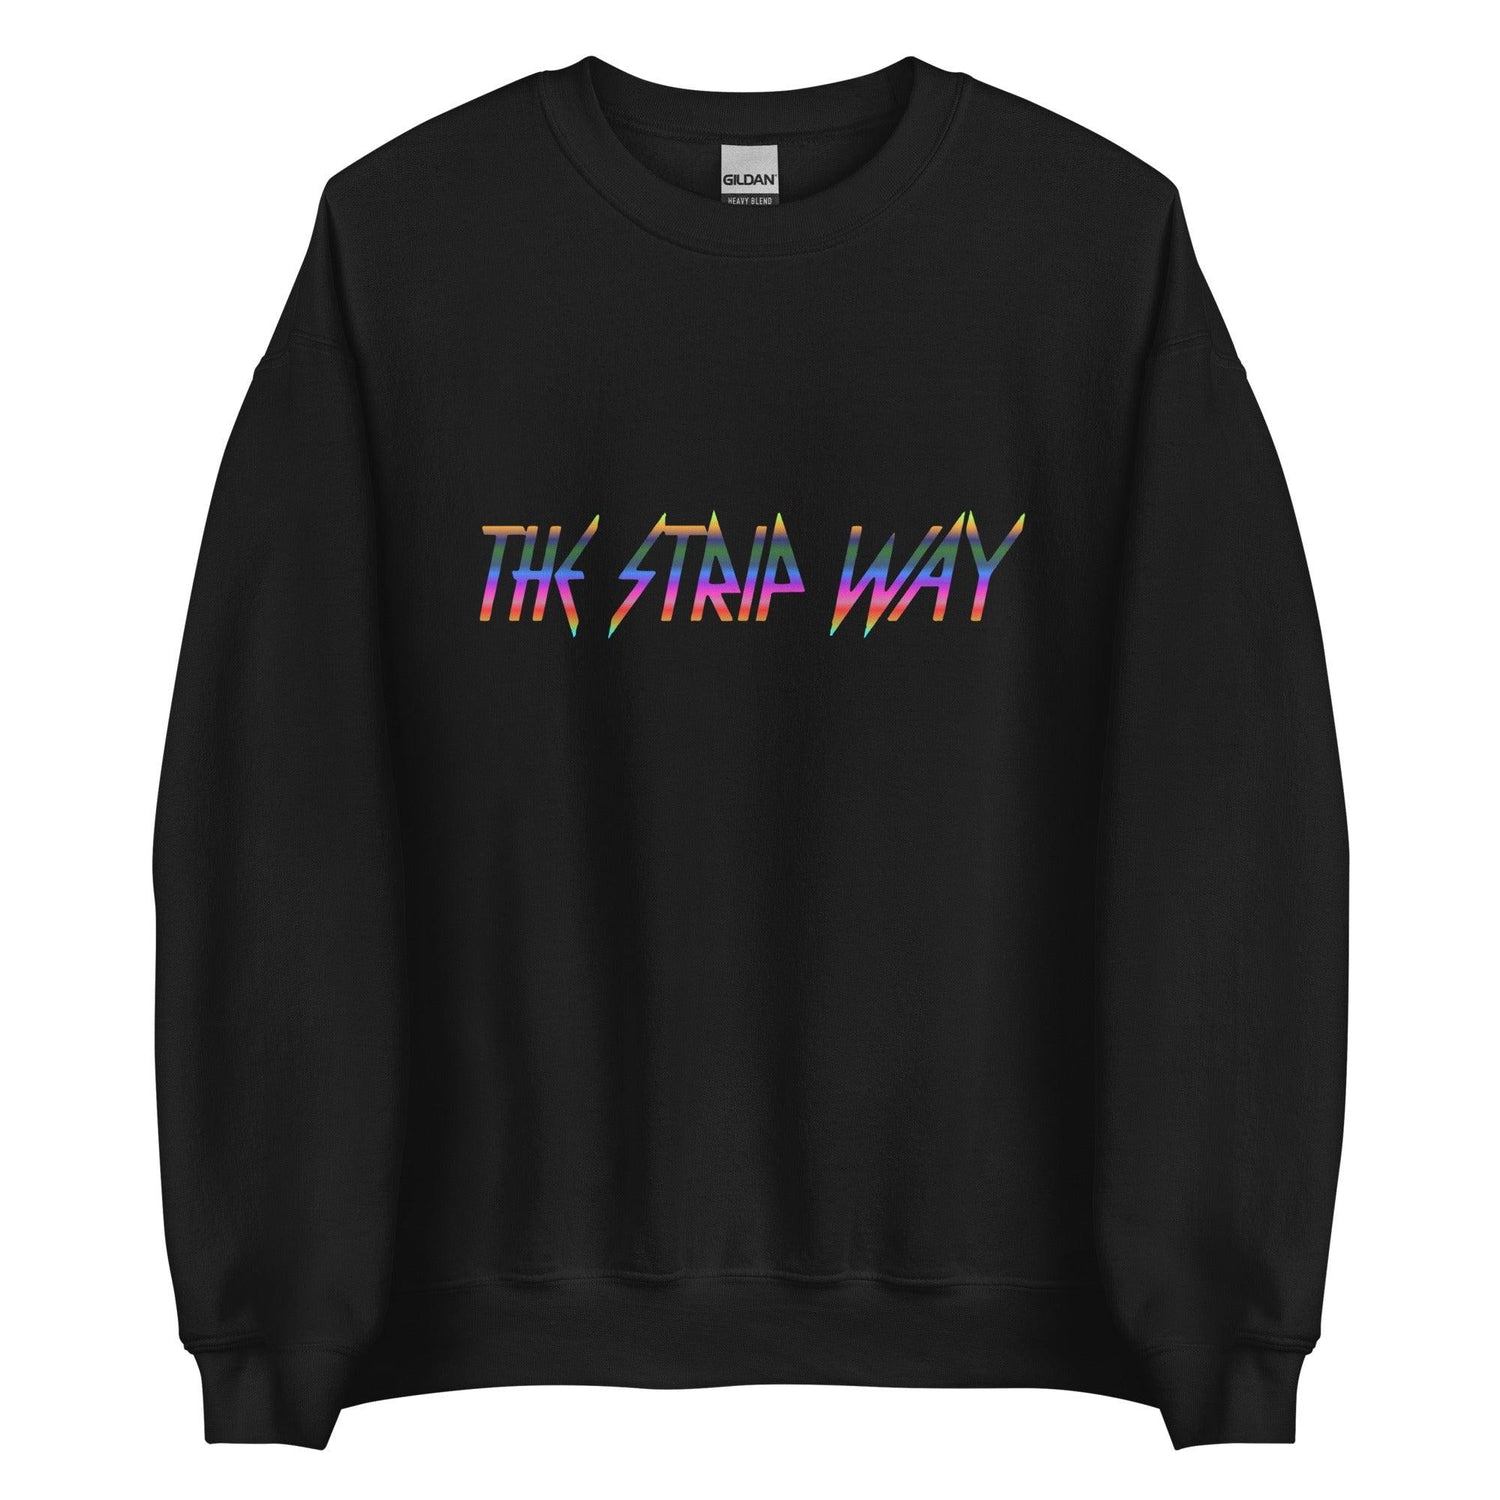 Marcus Stripling "The Strip Way" Sweatshirt - Fan Arch